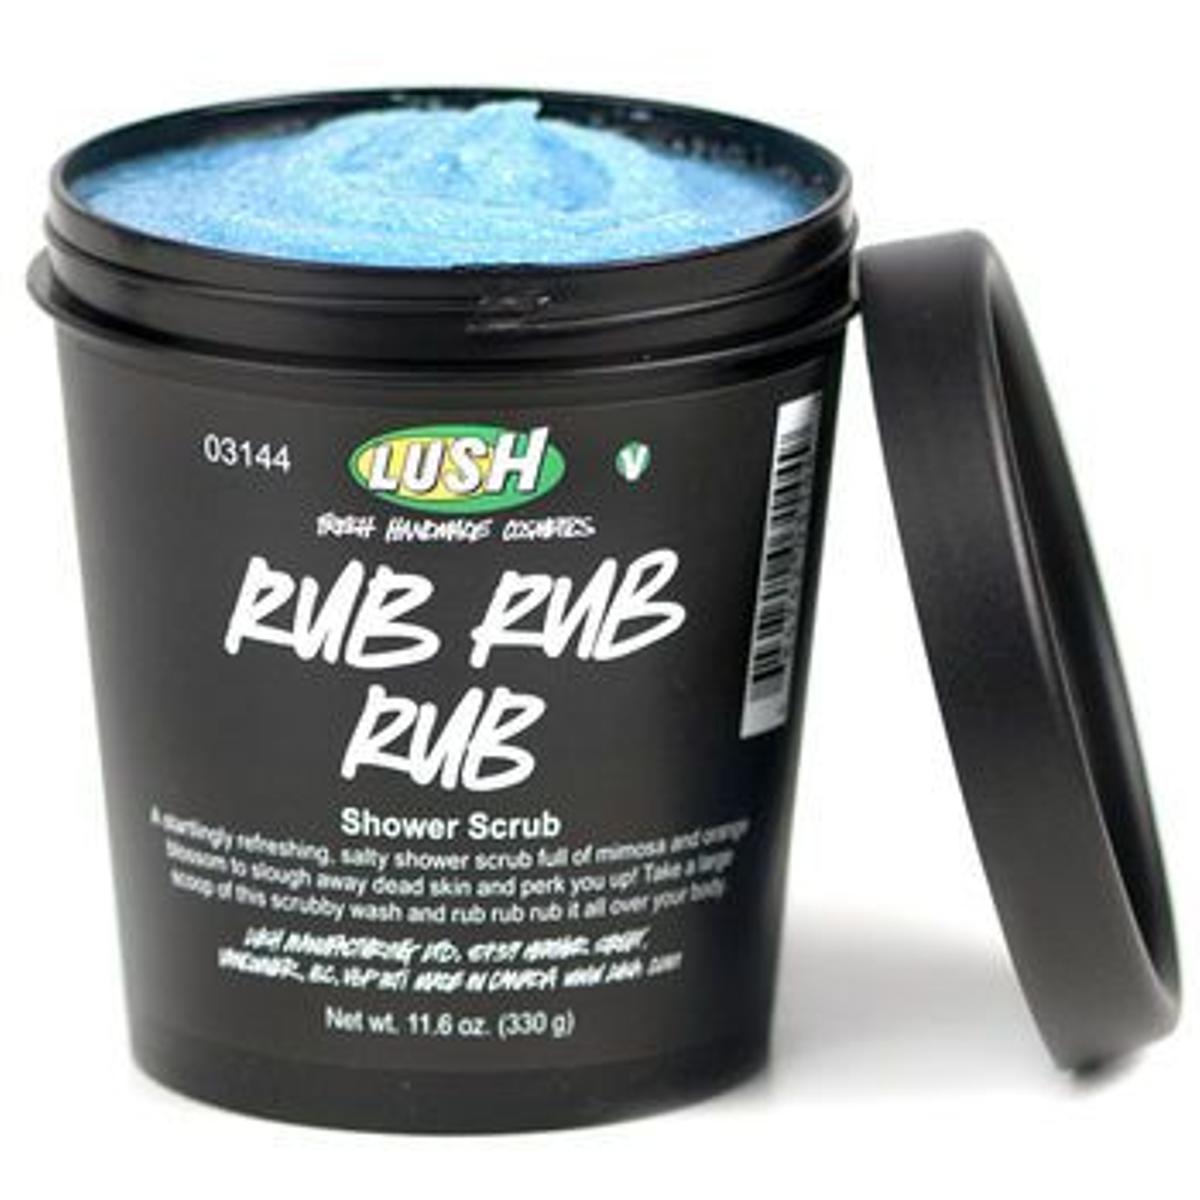 Rub Rub Rub exfoliante, Lush